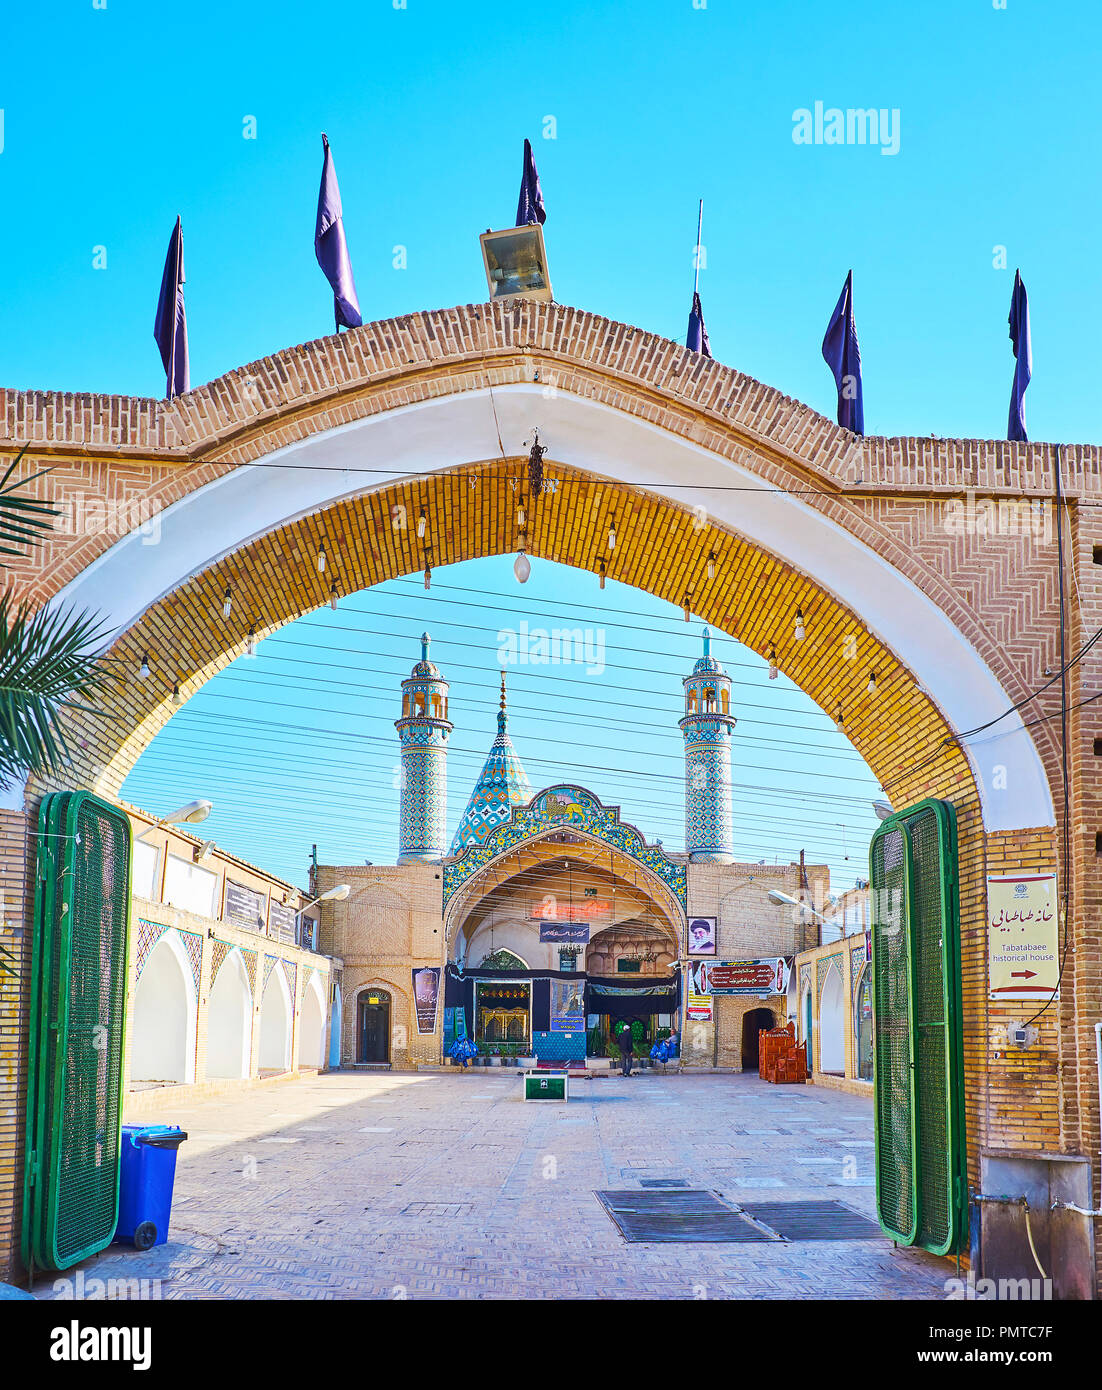 KASHAN, IRAN - 22 ottobre 2017: la vista attraverso il cancello su Shahzadeh-ye Ibrahim santo santuario, decorata con piastrelle cupola e minareti, il 22 ottobre Foto Stock